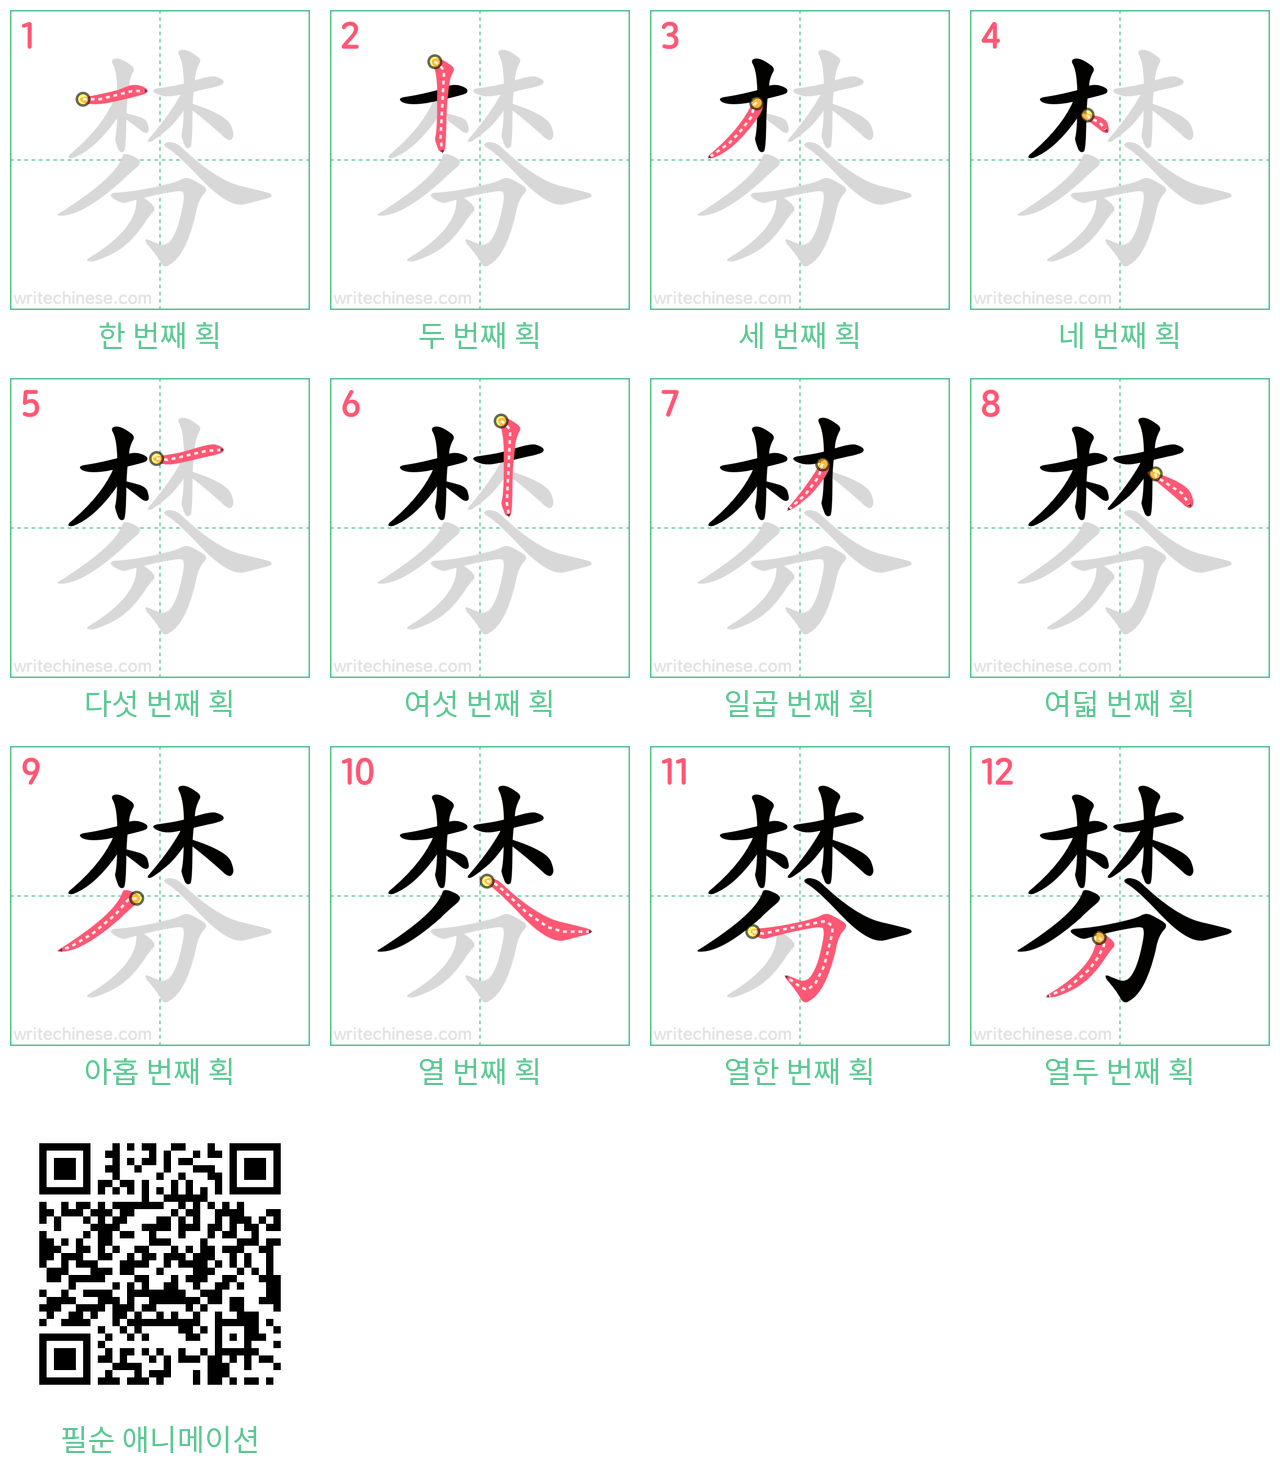 棼 step-by-step stroke order diagrams